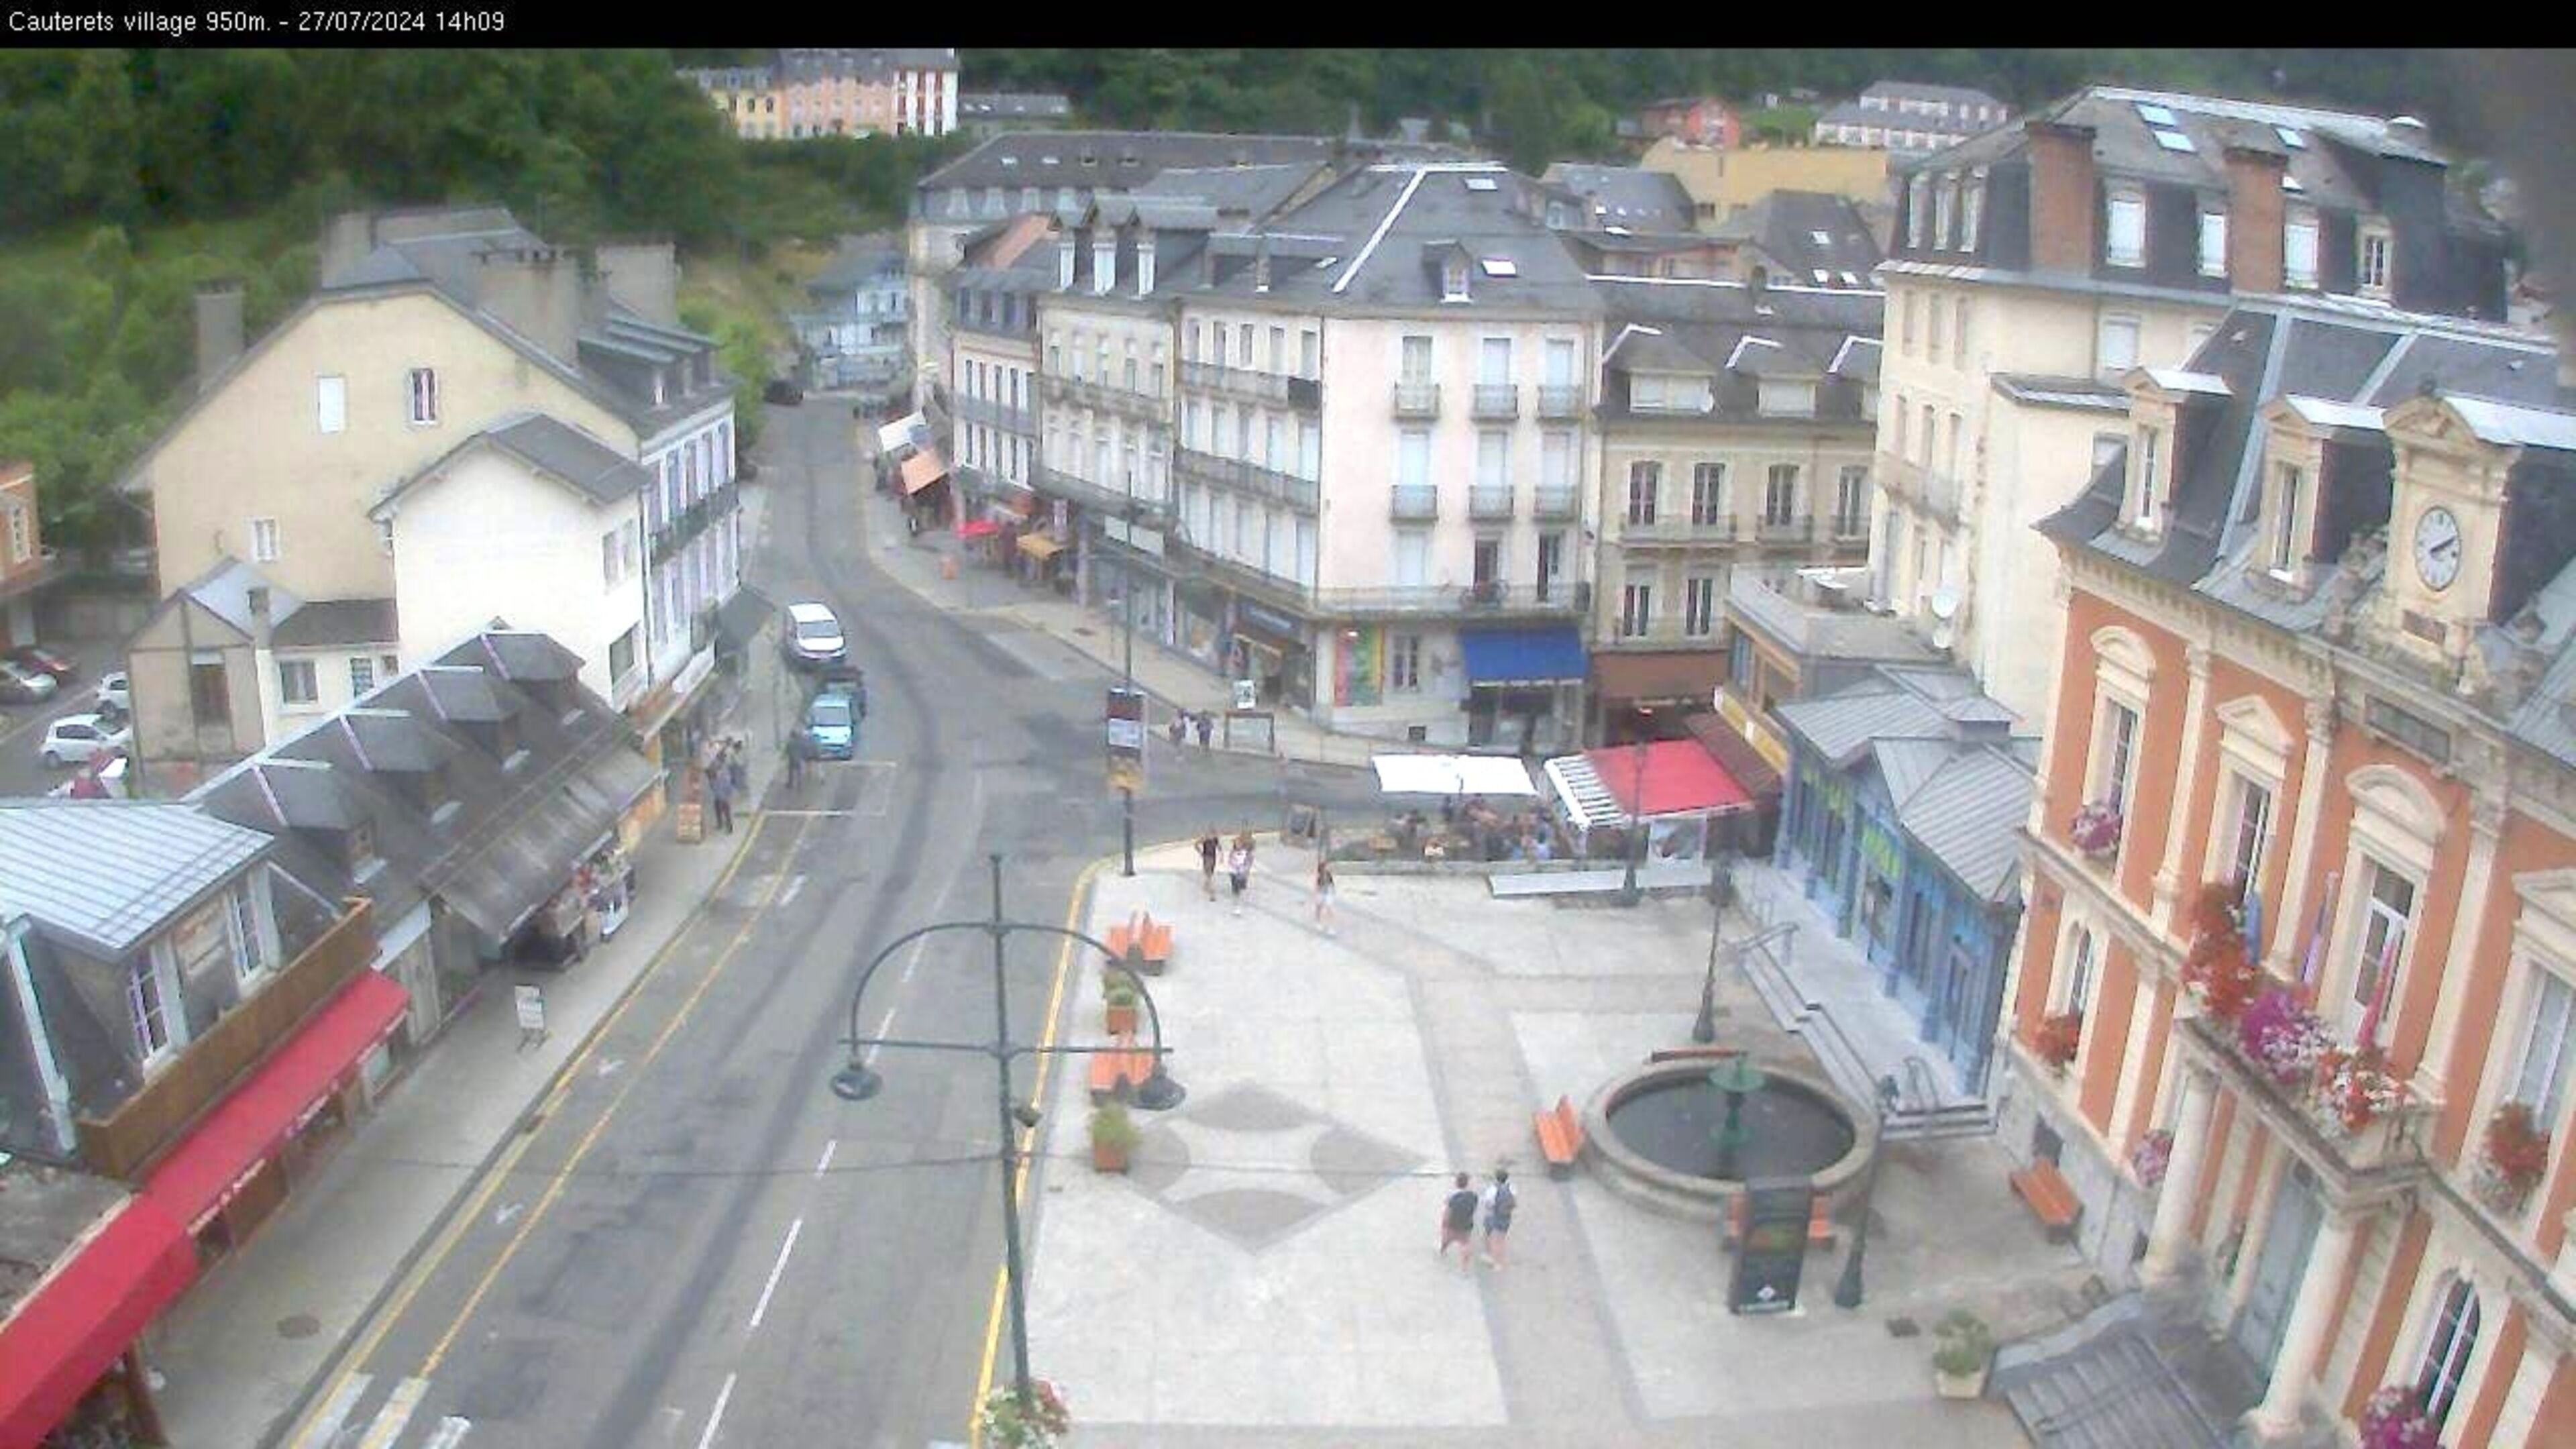 Webcam dans le village de Cauterets à 945 mètres d'altitude dans les Pyrénées. Vue sur la D920